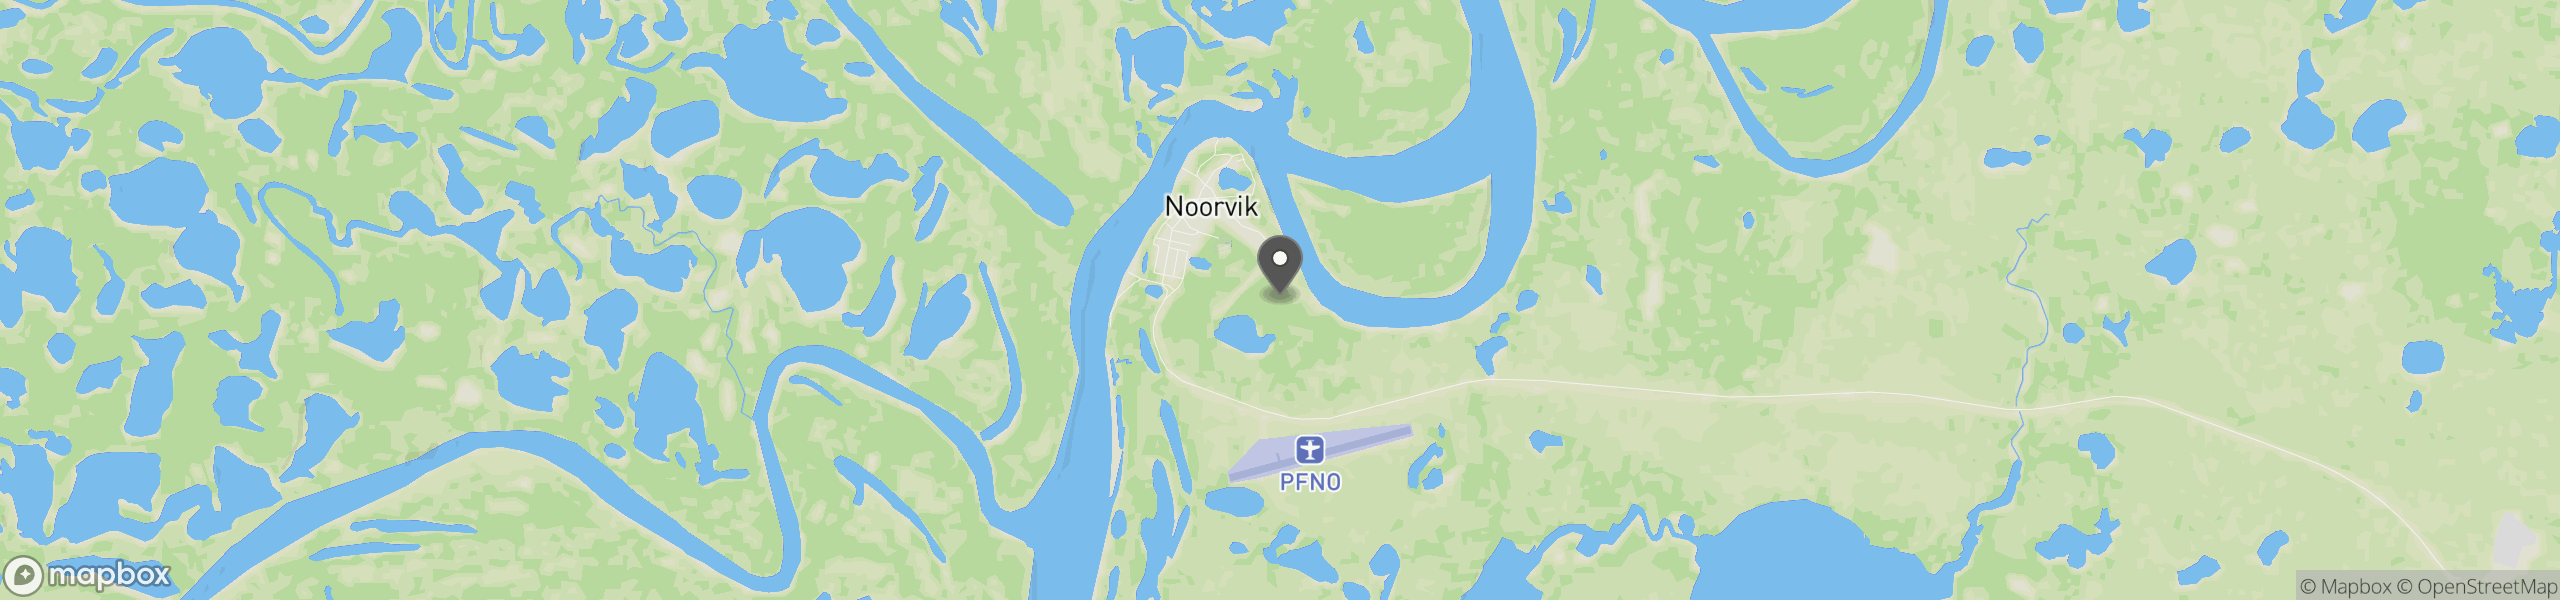 Noorvik, AK